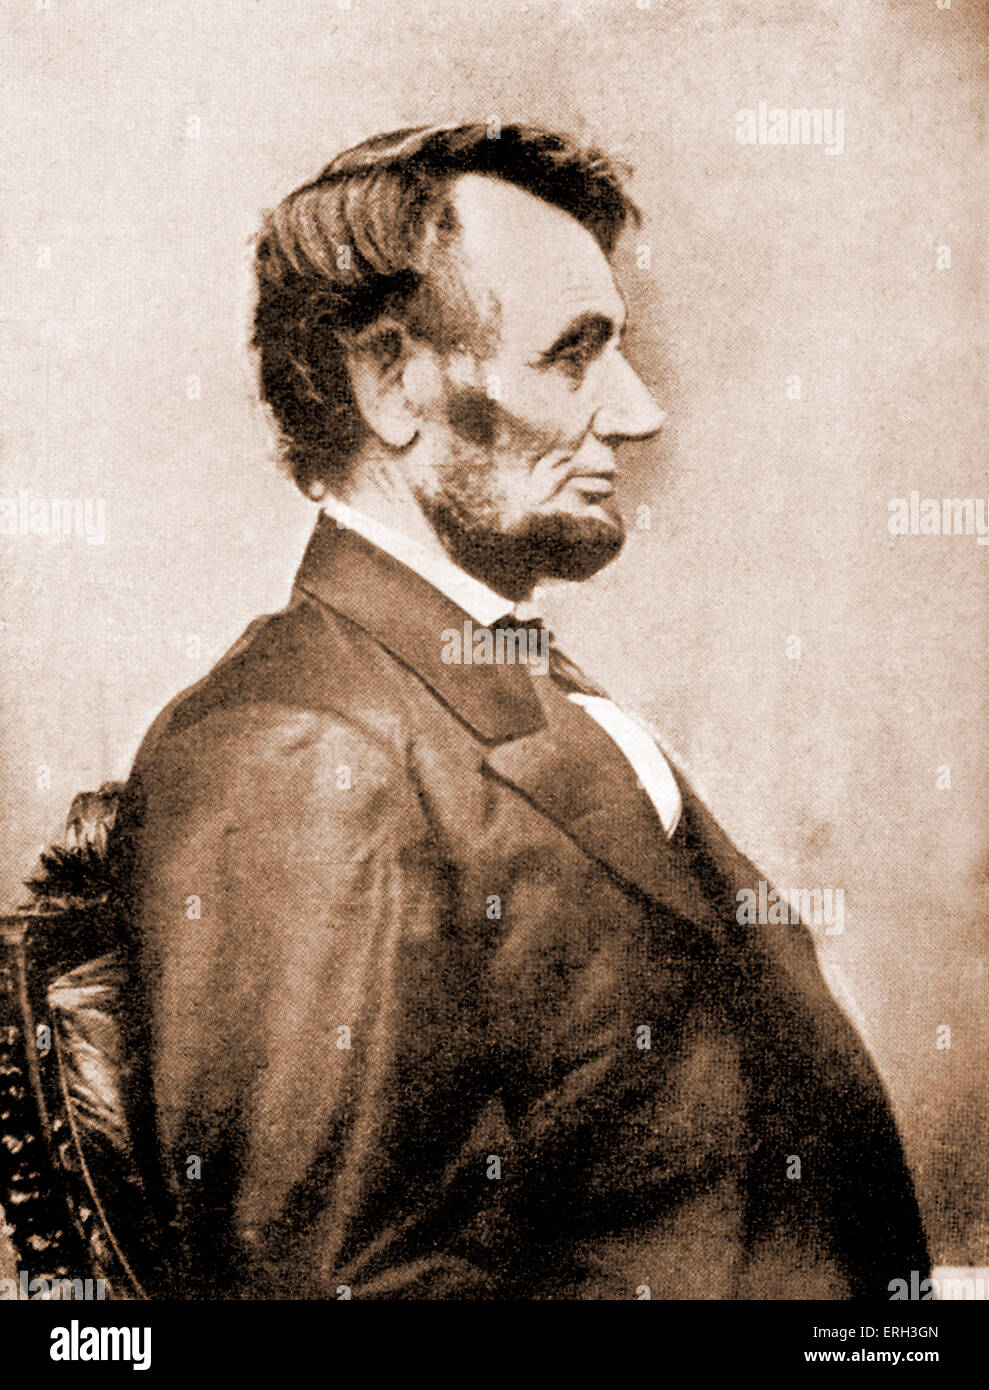 Abraham Lincoln - portrait de profil. Photographie du 16e président des États-Unis prises en 1864, un an avant son assassinat. 12 février 1809 - 15 avril 1865. Banque D'Images